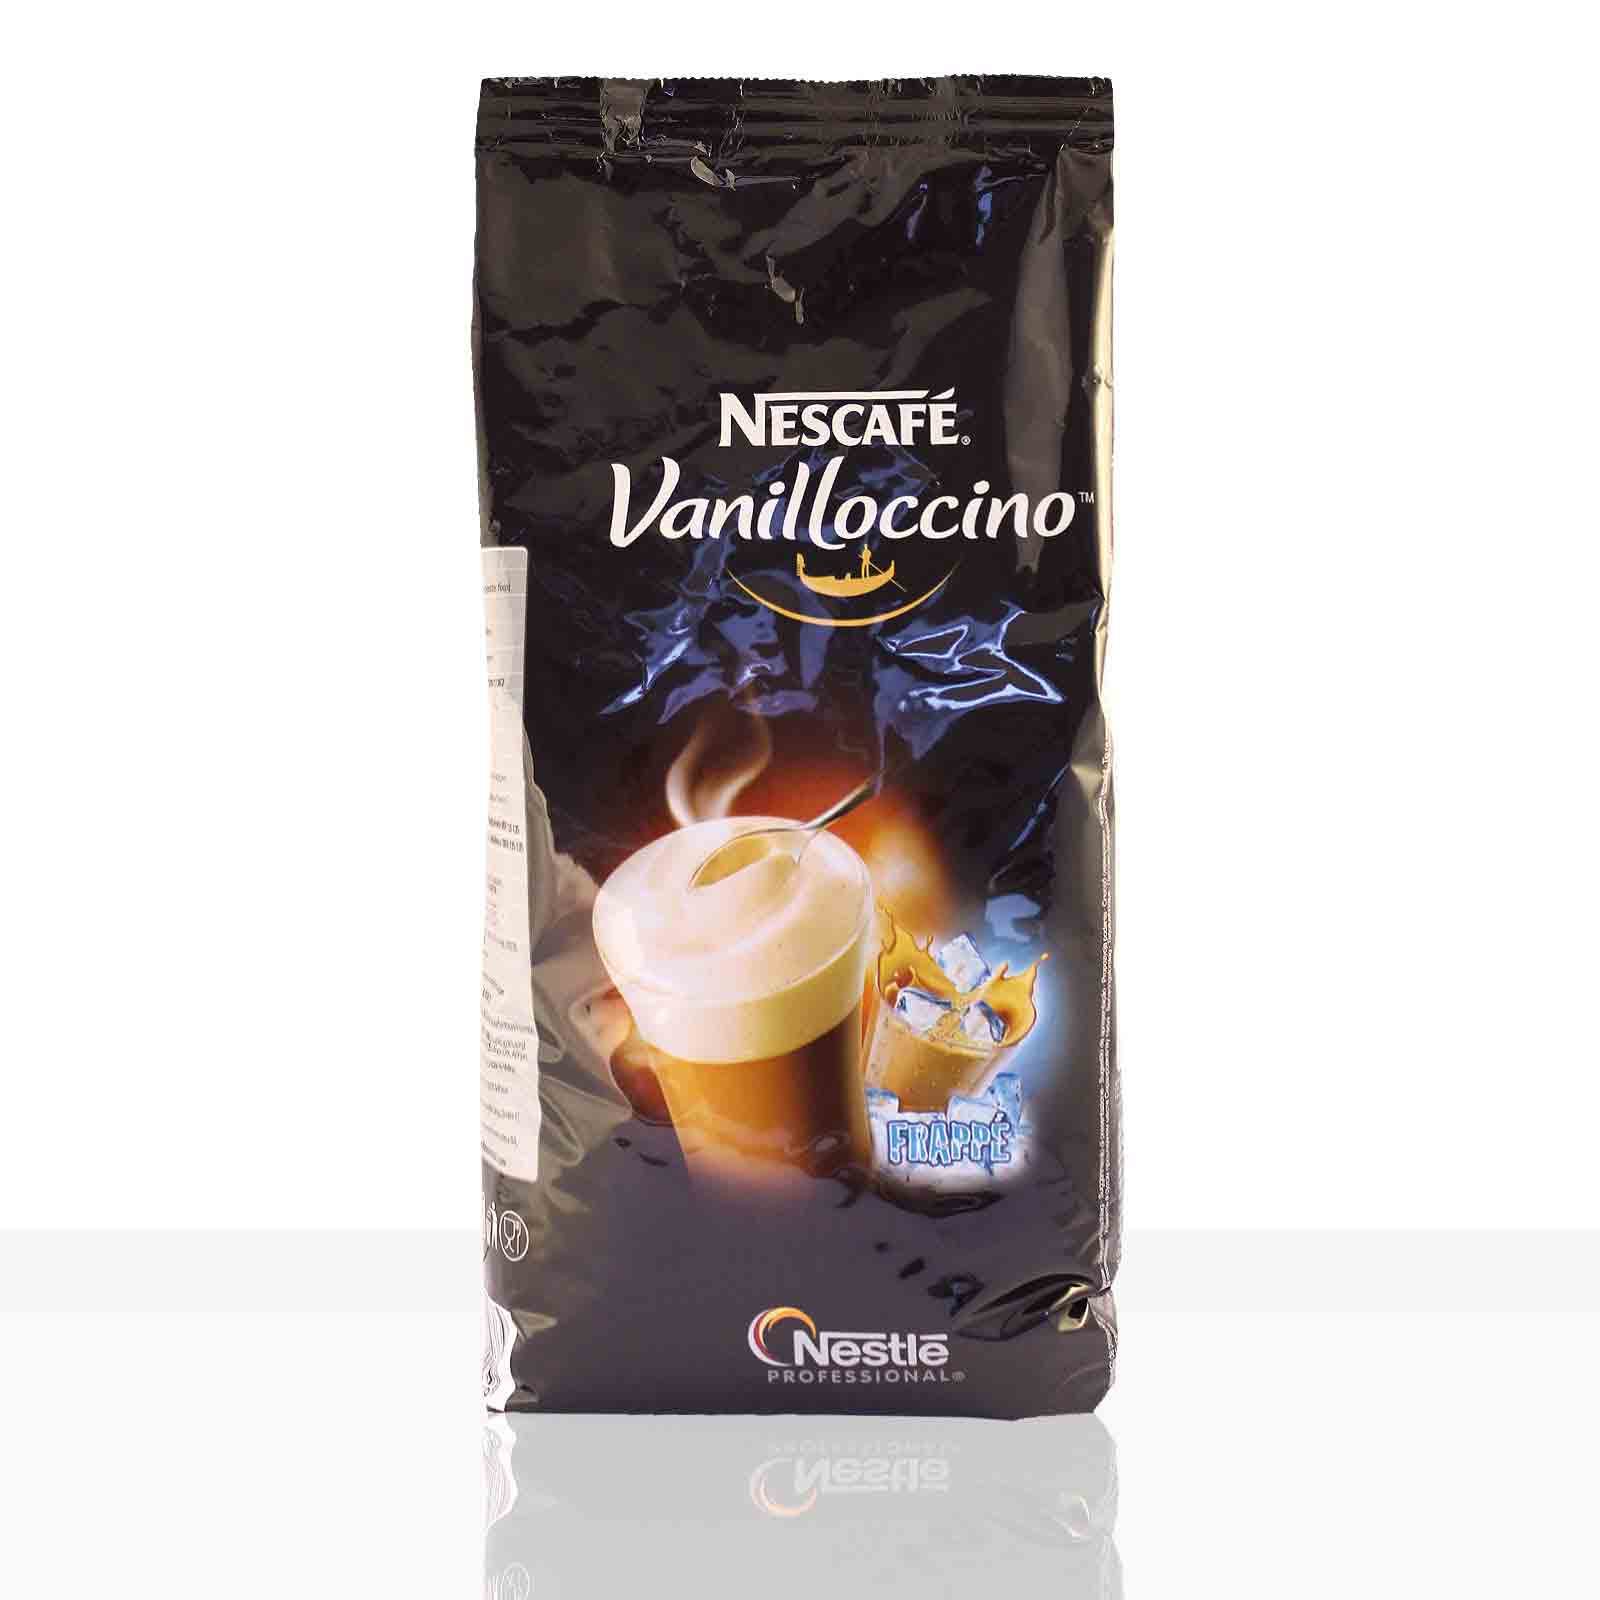 Nestle Nescafe Frappe Vanilloccino - 1kg Vanillepulver Instantpulver Milchshake